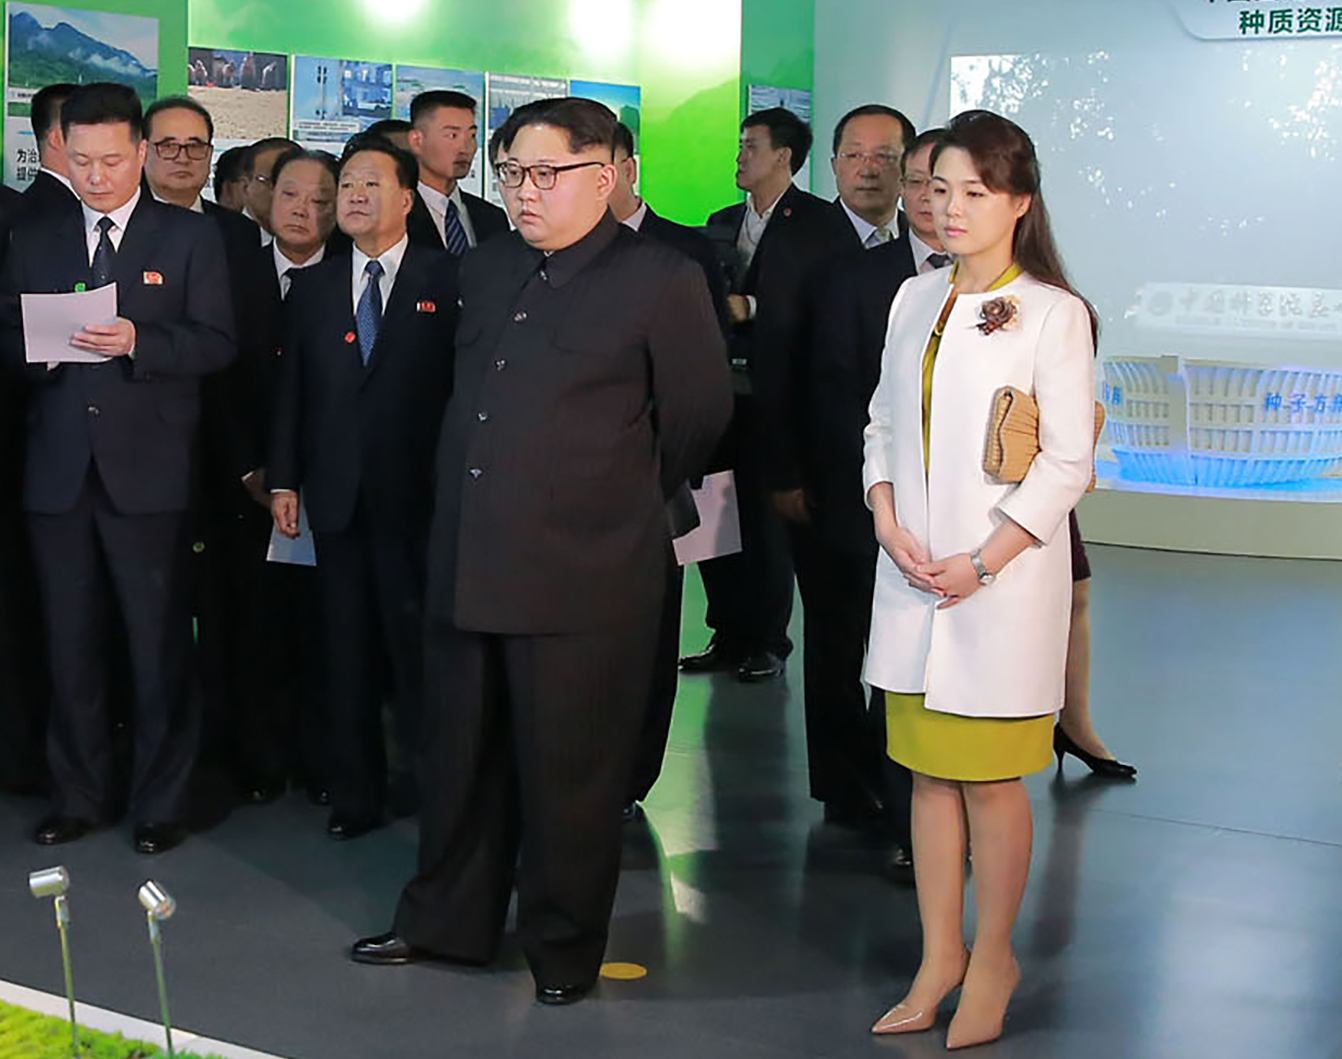 Kim Jong Un and Ri Sol-Ju